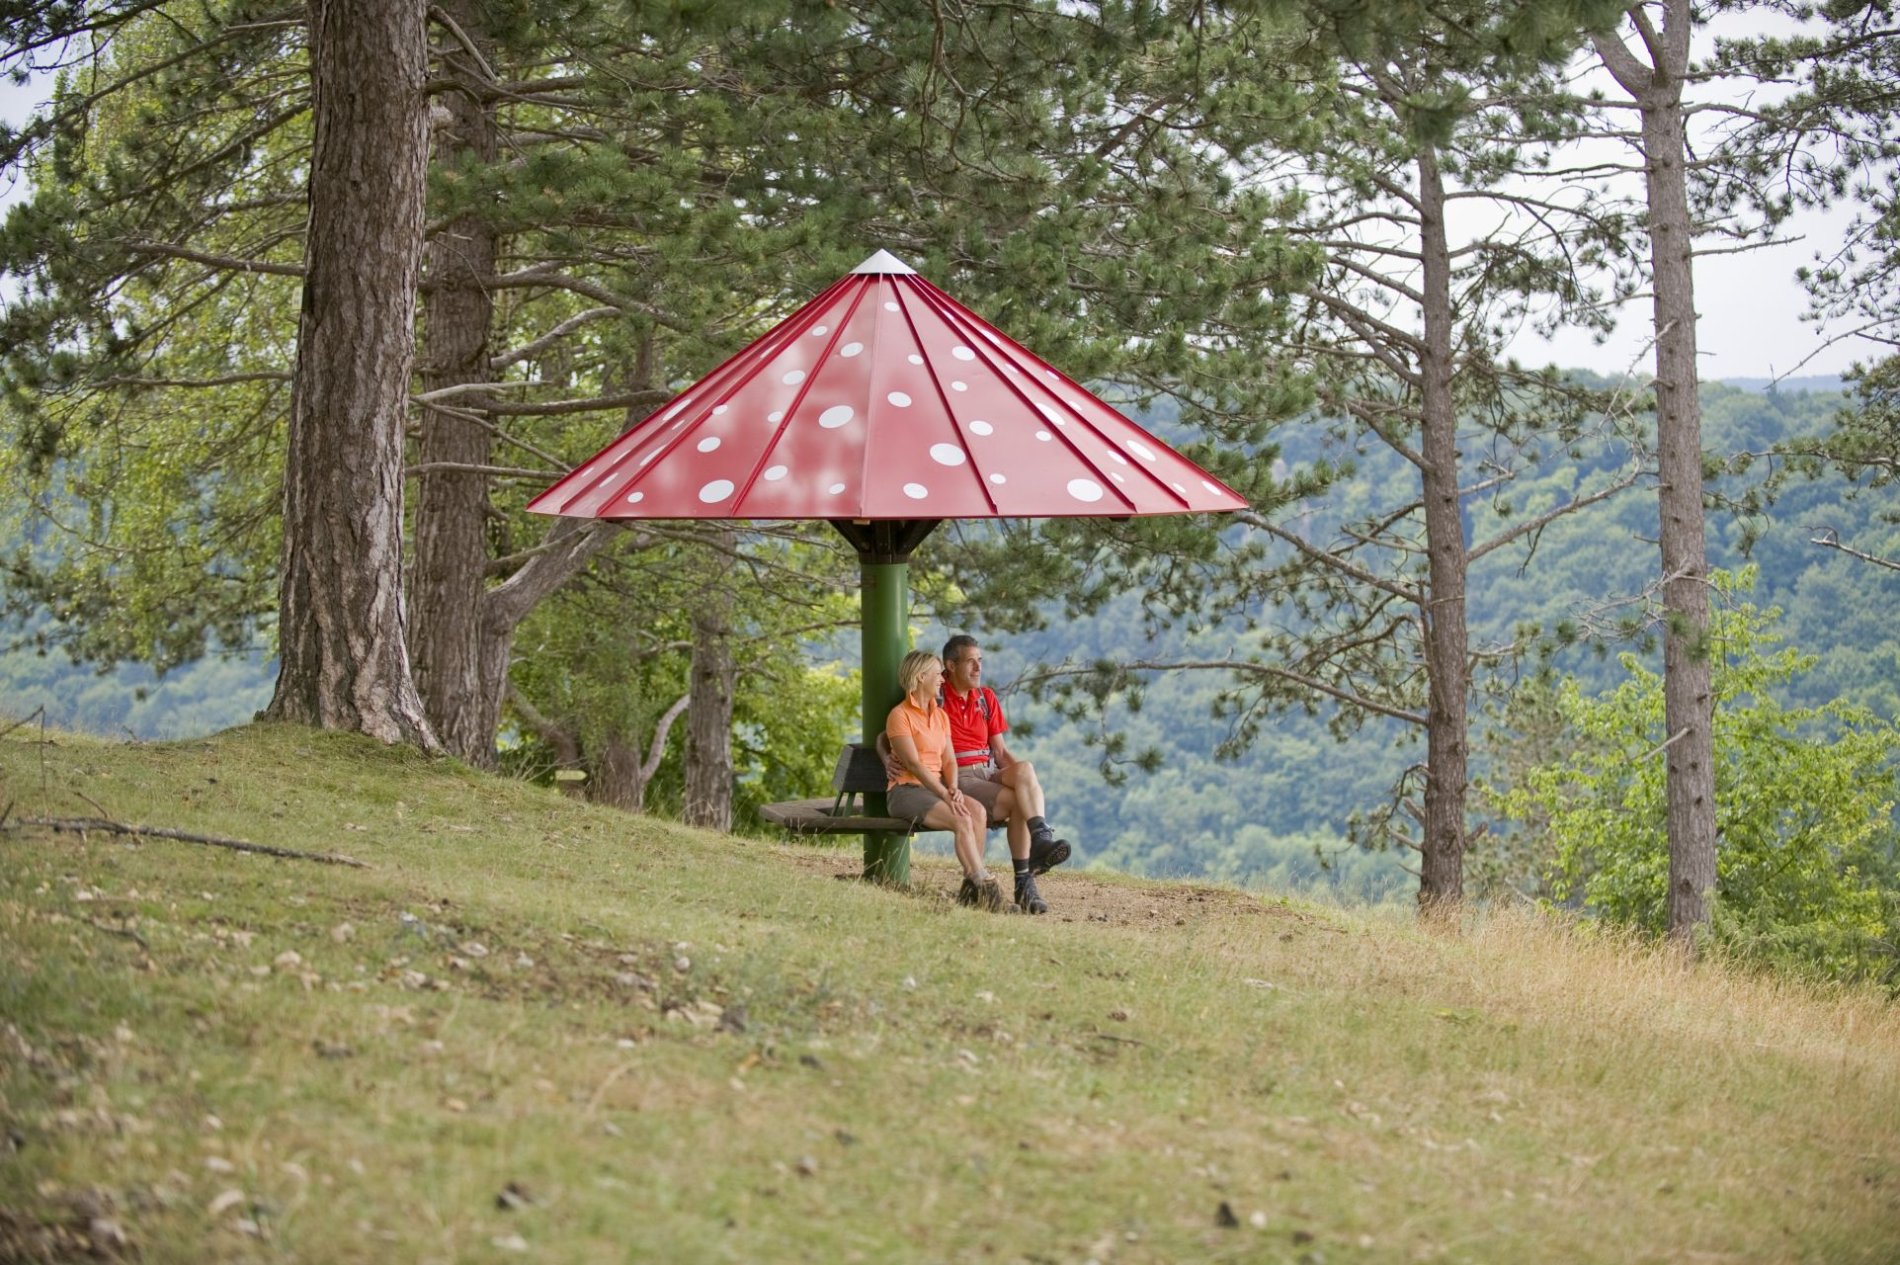 Zwei Wanderer sitzen an einer Sitzgelegenheit mit einem roten, pilzförmigen Dach.